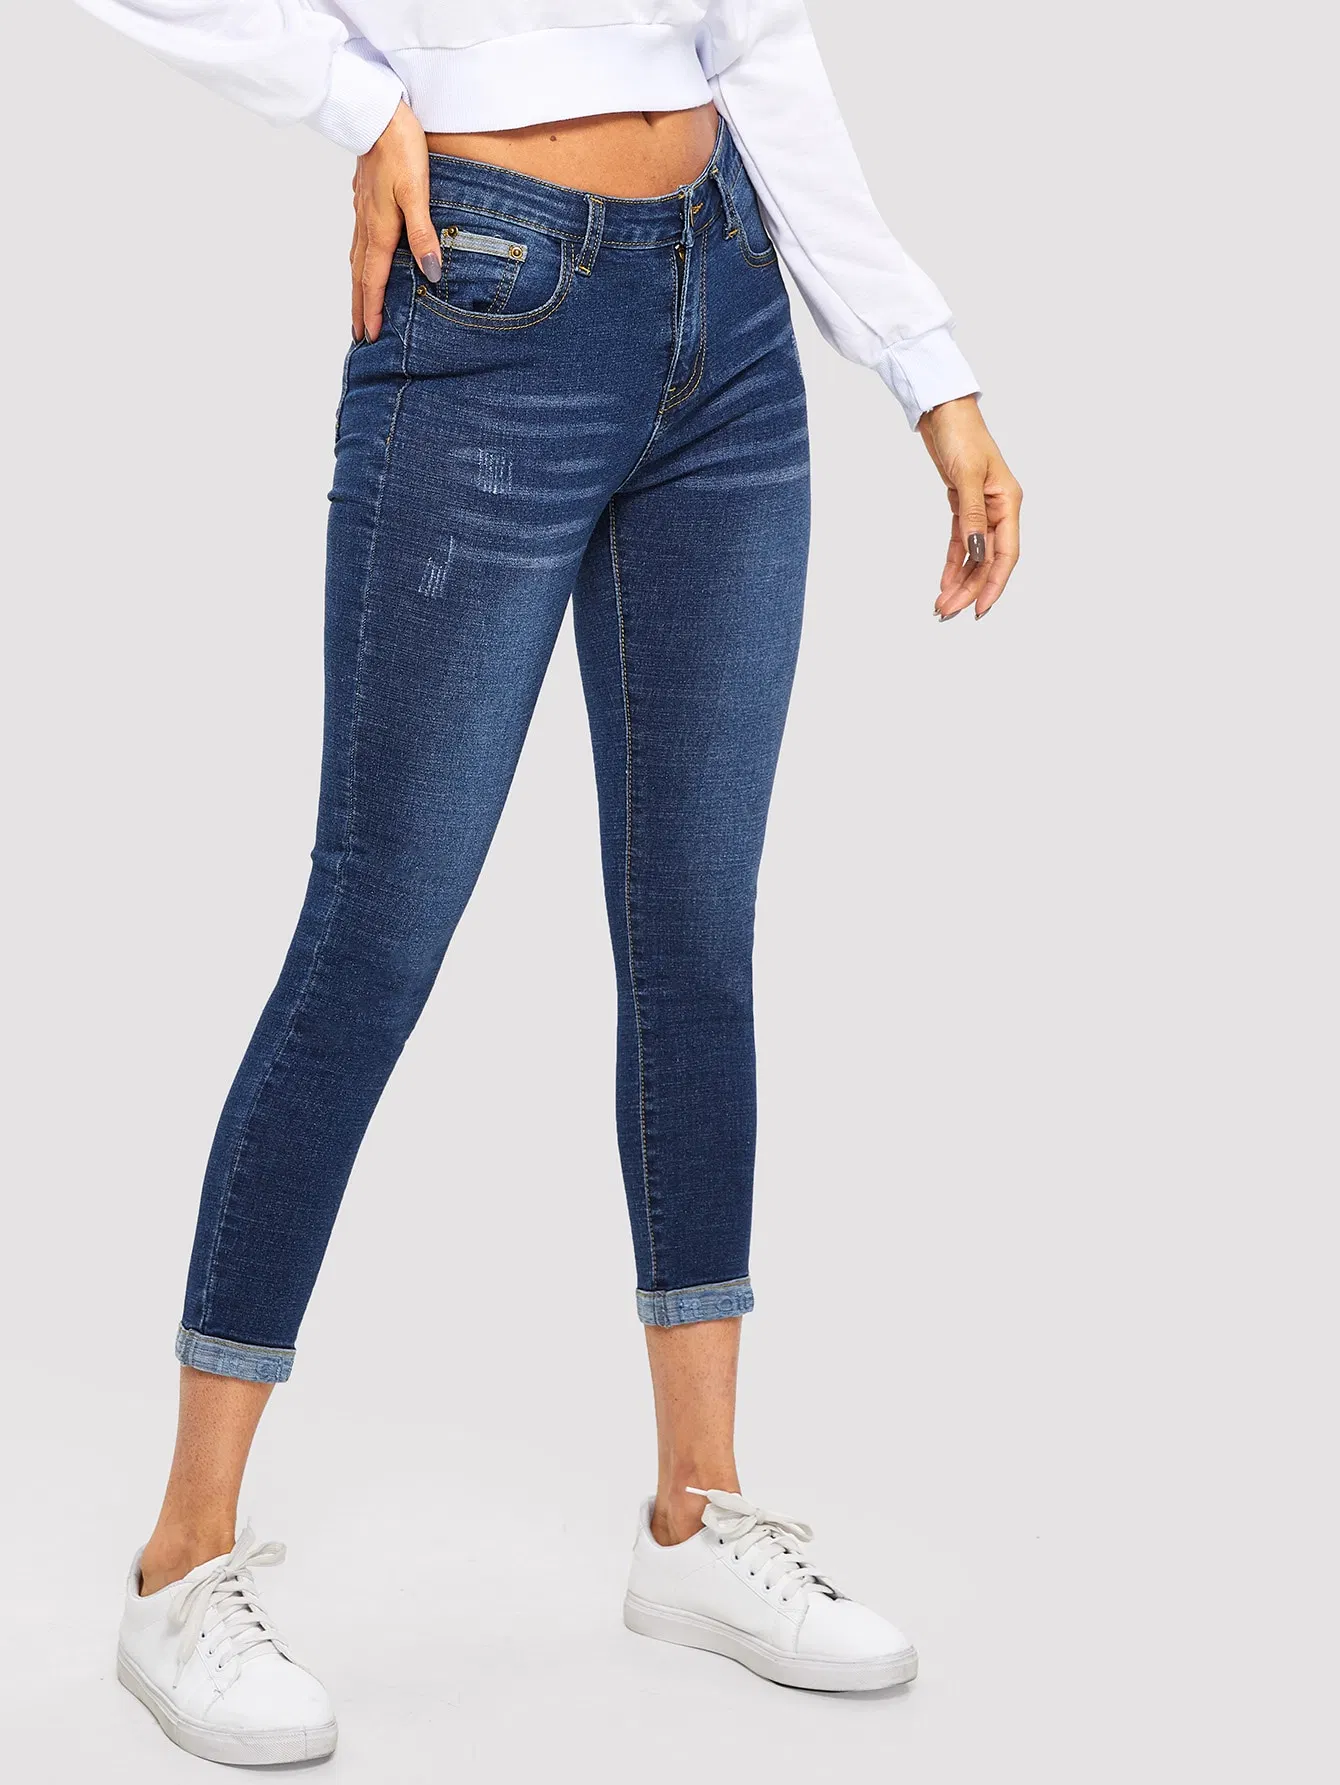 Con Cintura baja de mediados de-Azul cero y doble la parte inferior de la calidad de estiramiento Hem nueva moda Dama Jeans vaqueros Slim montaje